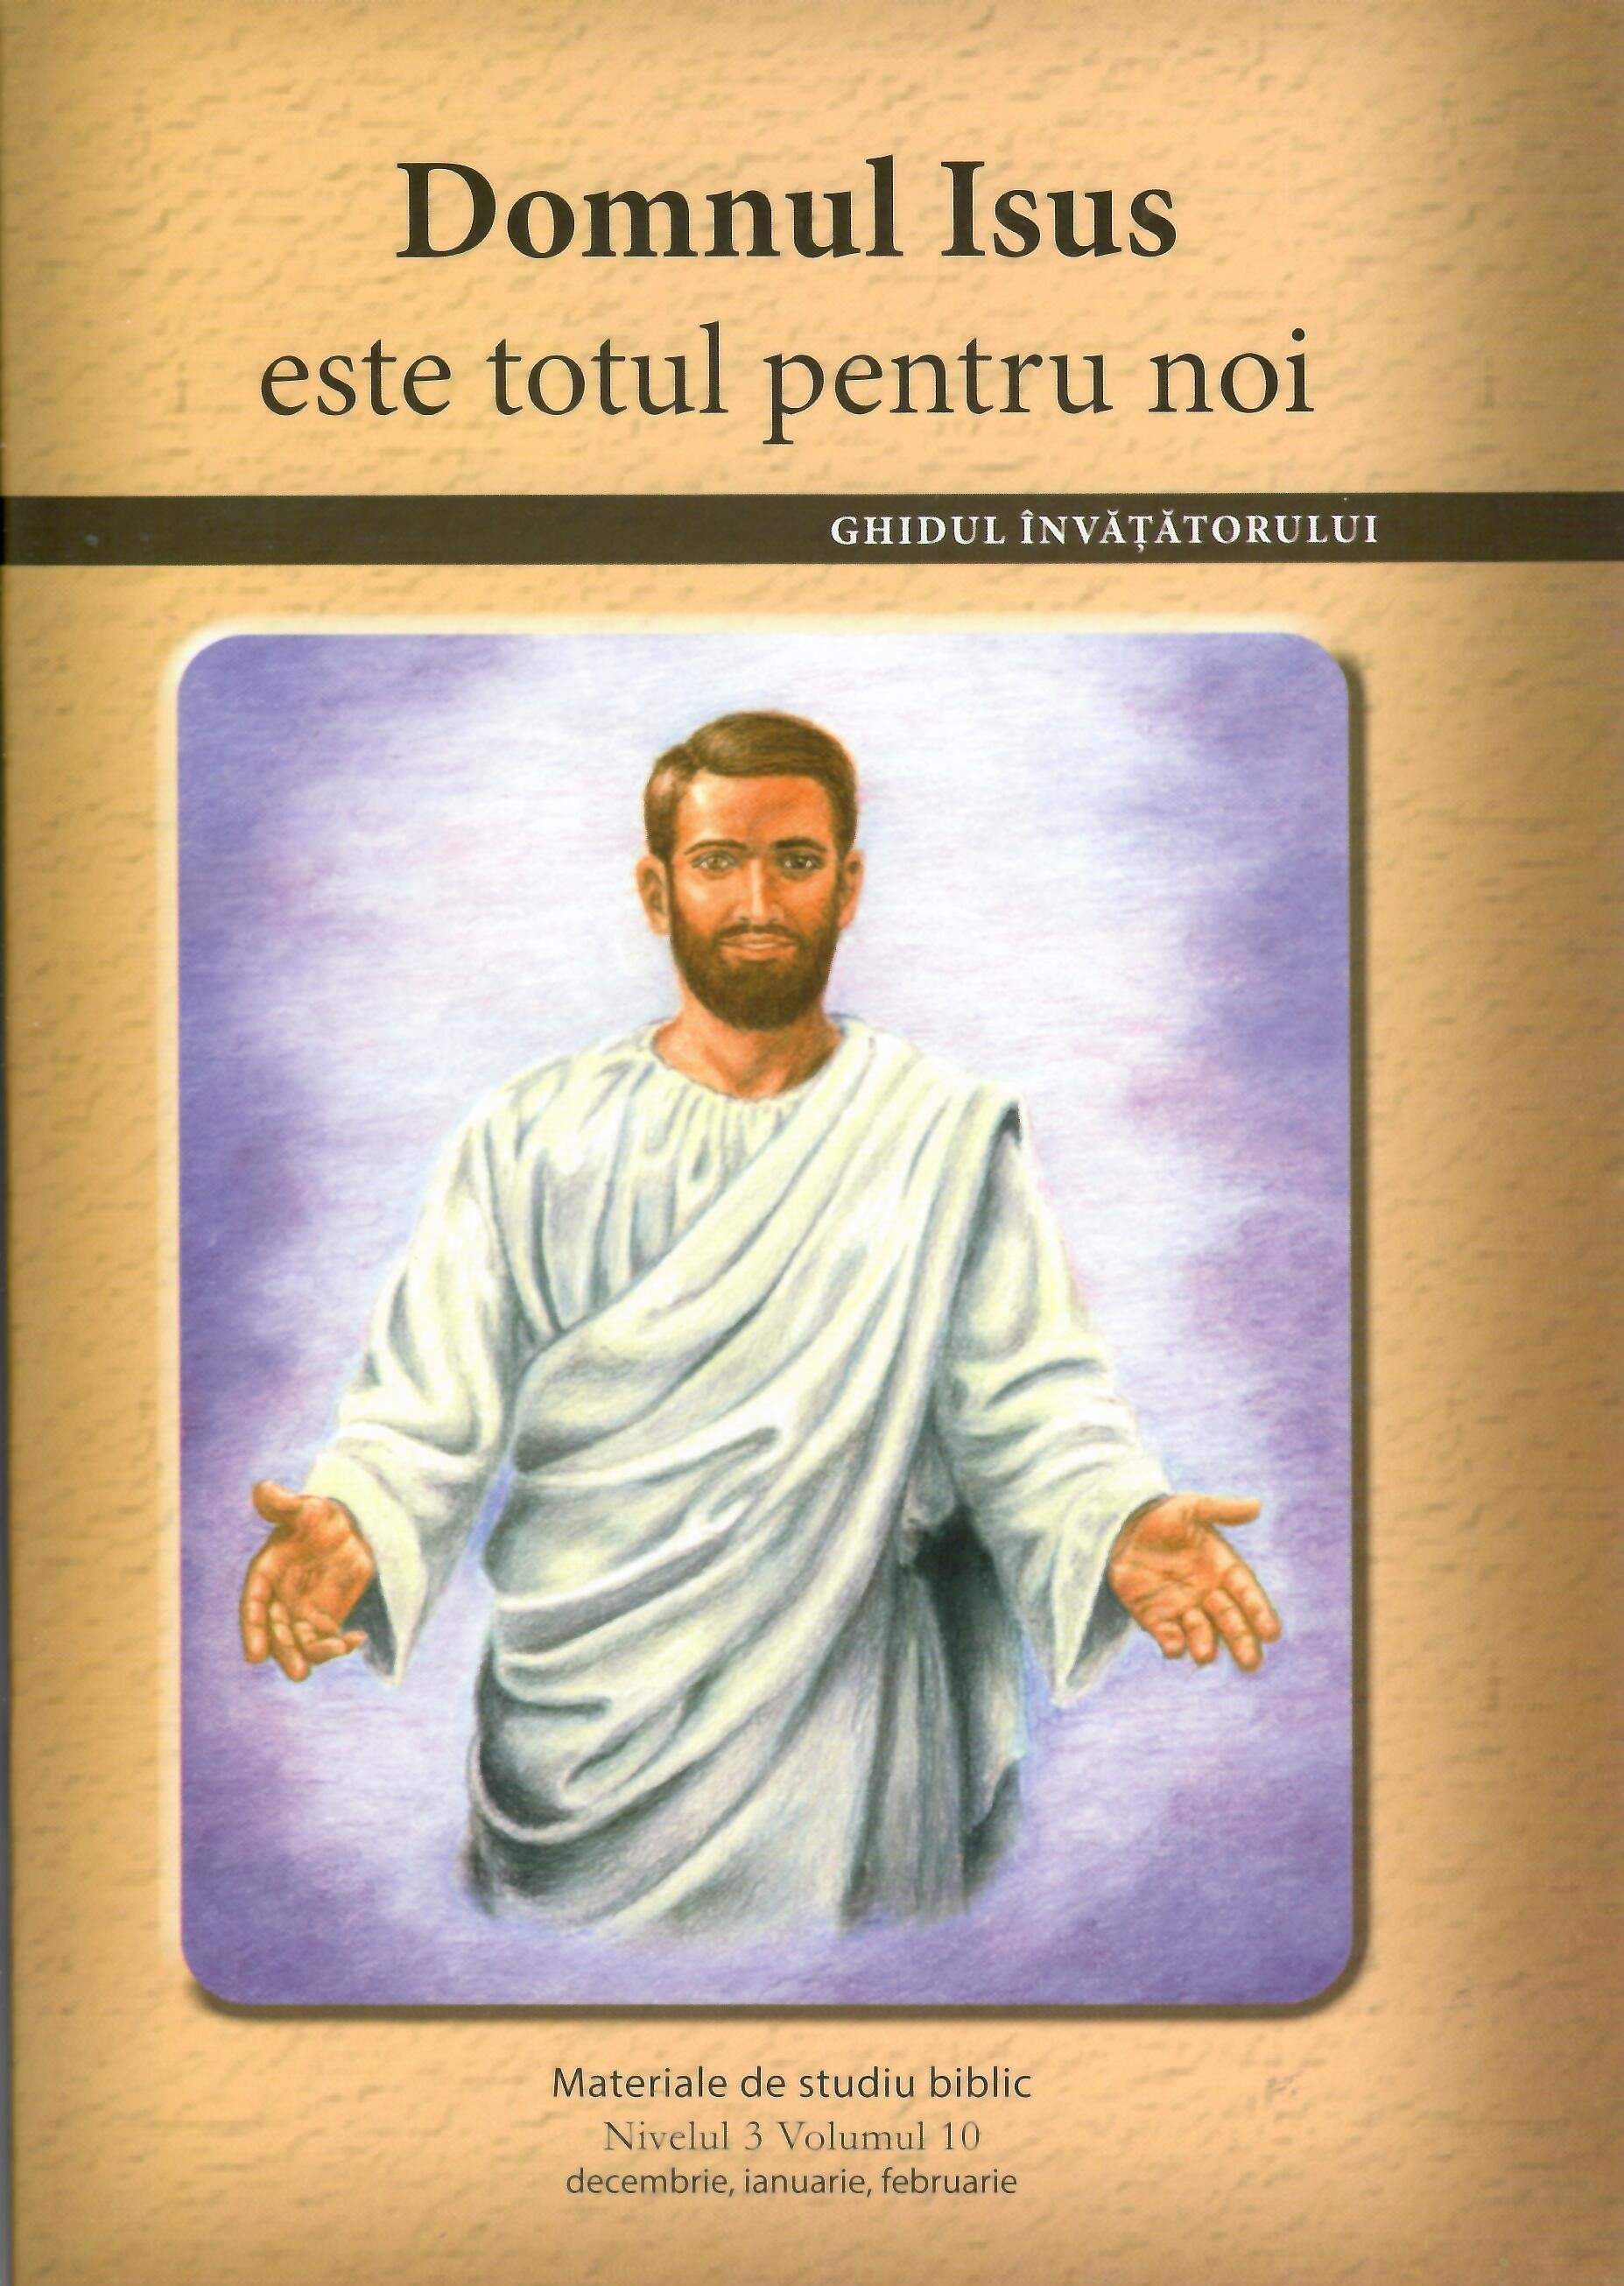 Nivelul 3 vol.10 Domnul Isus este totul pentru noi - Ghidul invatatorului